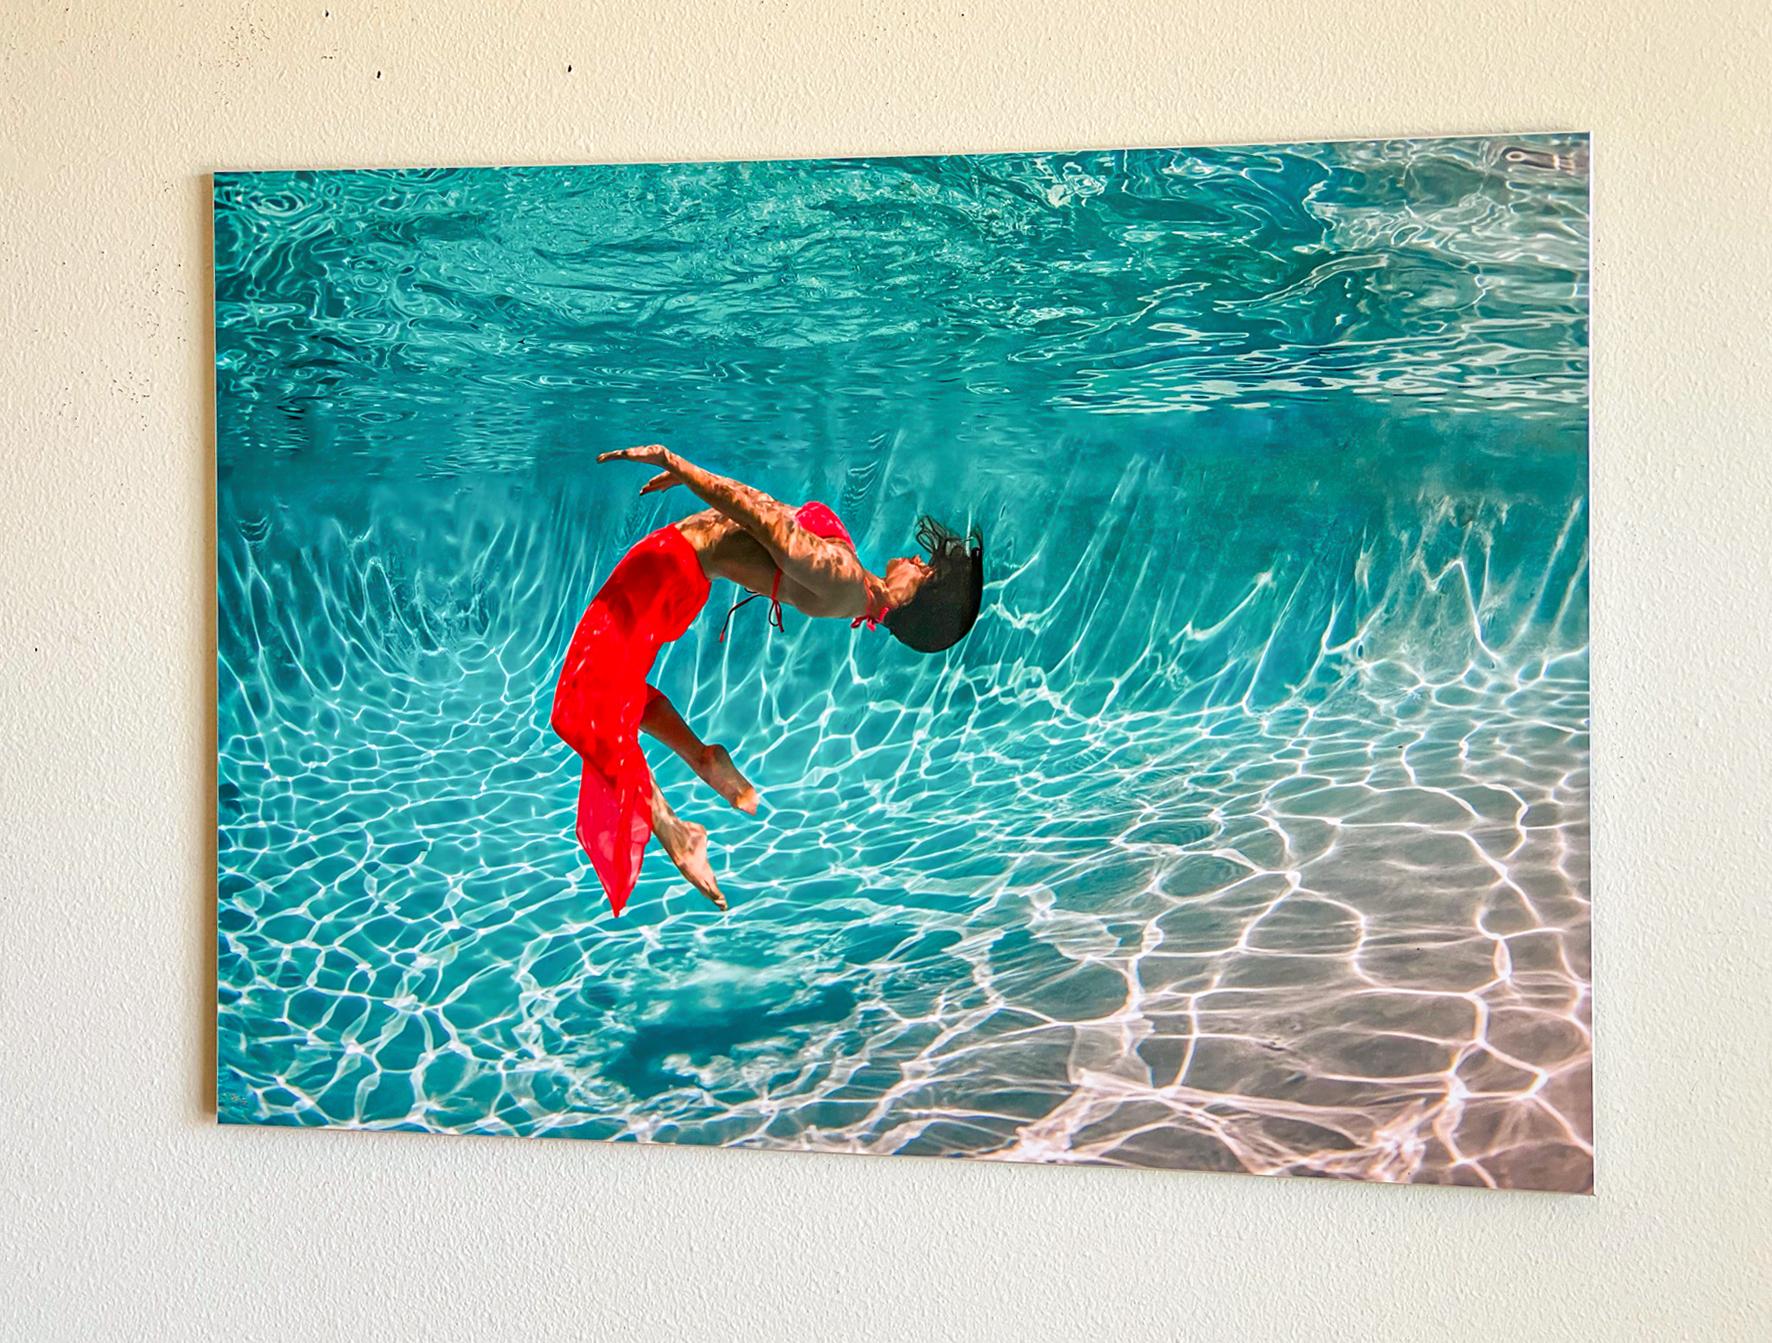 Photographie sous-marine d'une jeune femme en robe rouge dansant sous l'eau dans une piscine. Une photo très lumineuse avec beaucoup de soleil et de positivité.

Modèle : la danseuse russe Olga Sokolova.  Regardez sa prestation 